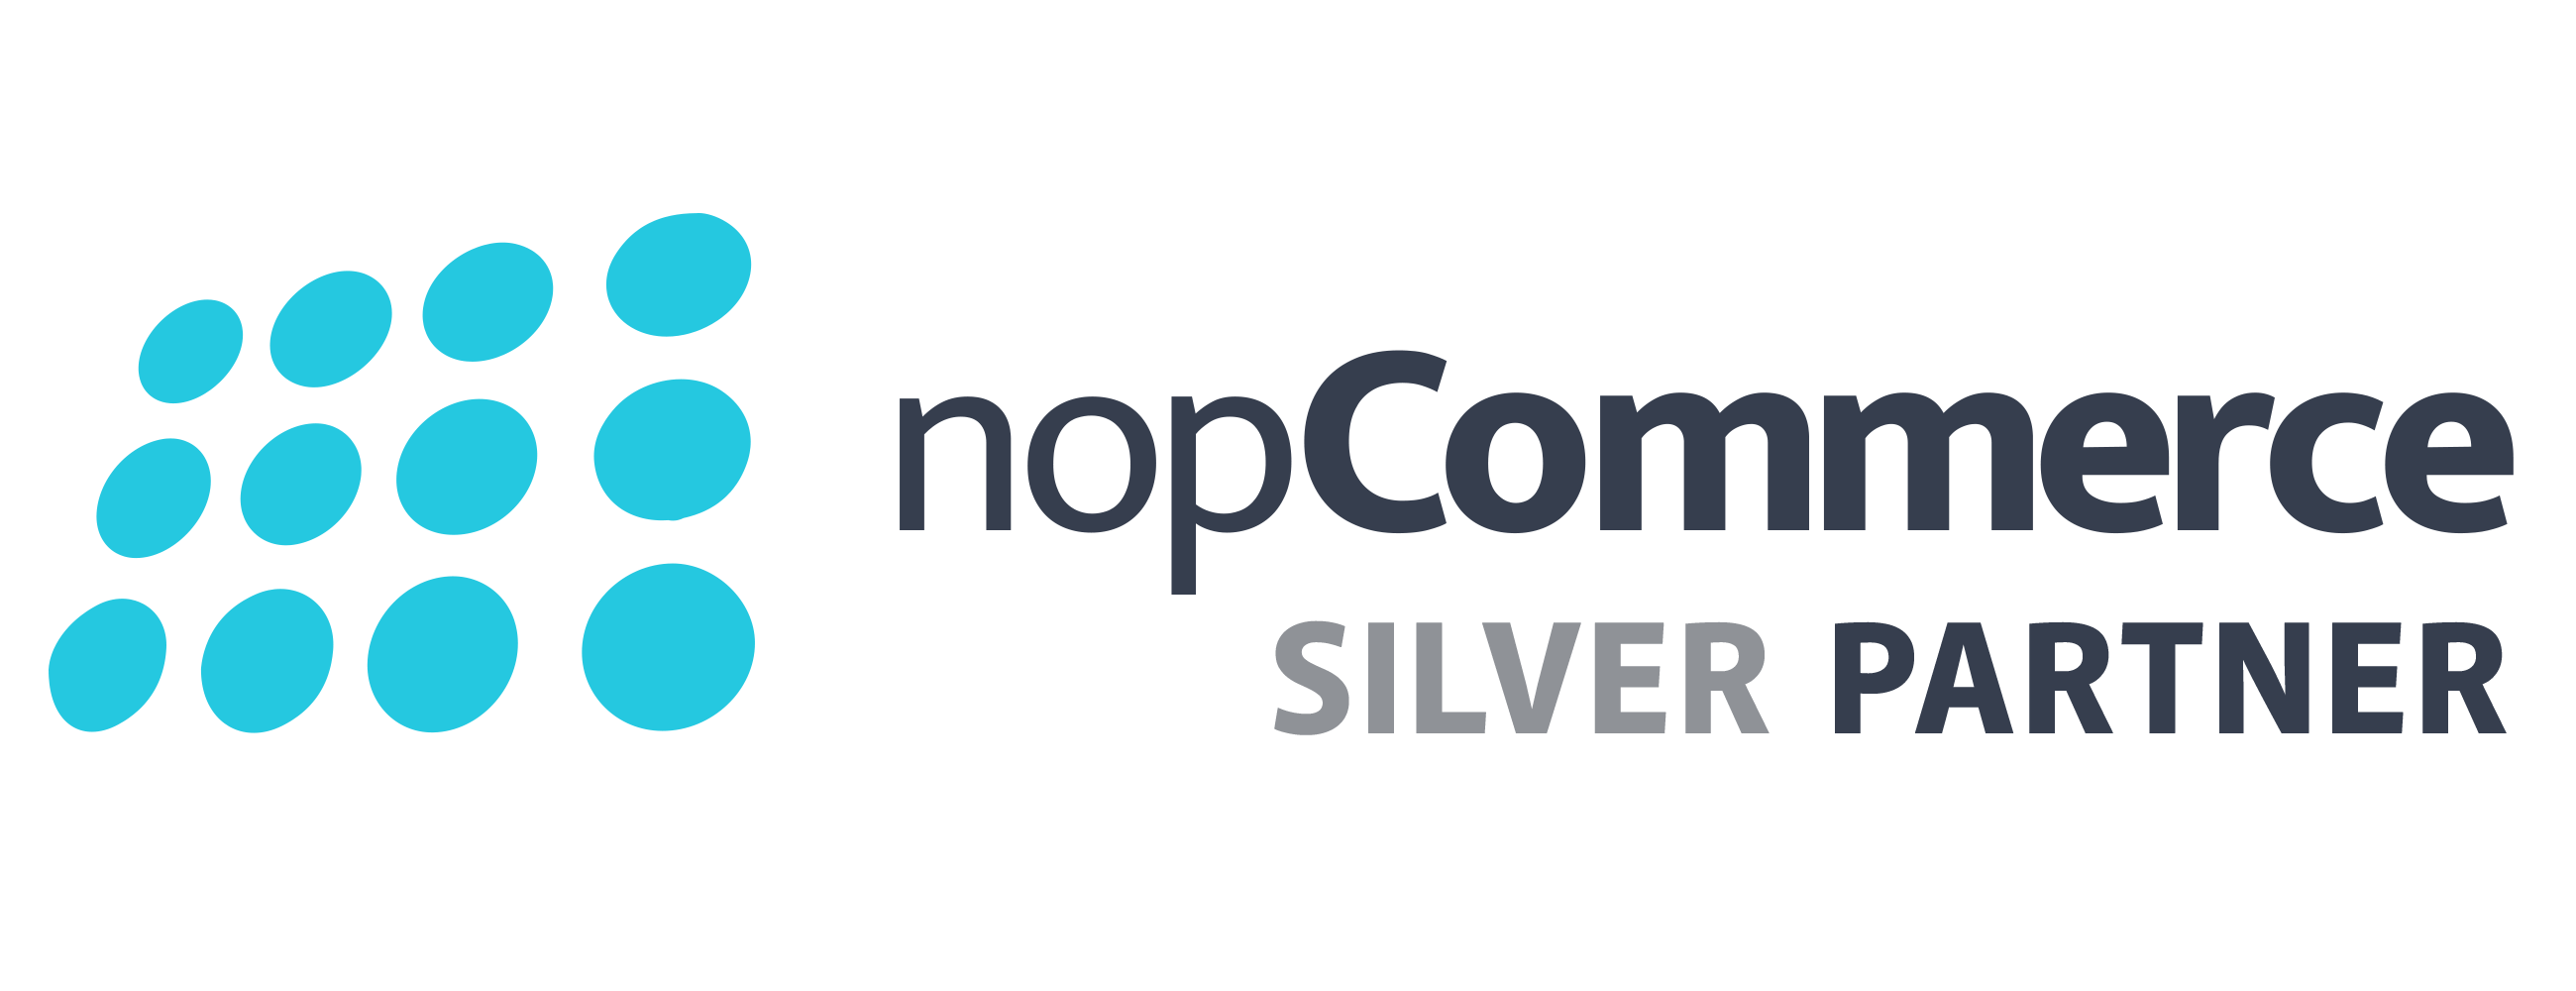 nopCommerce - Silver Partner